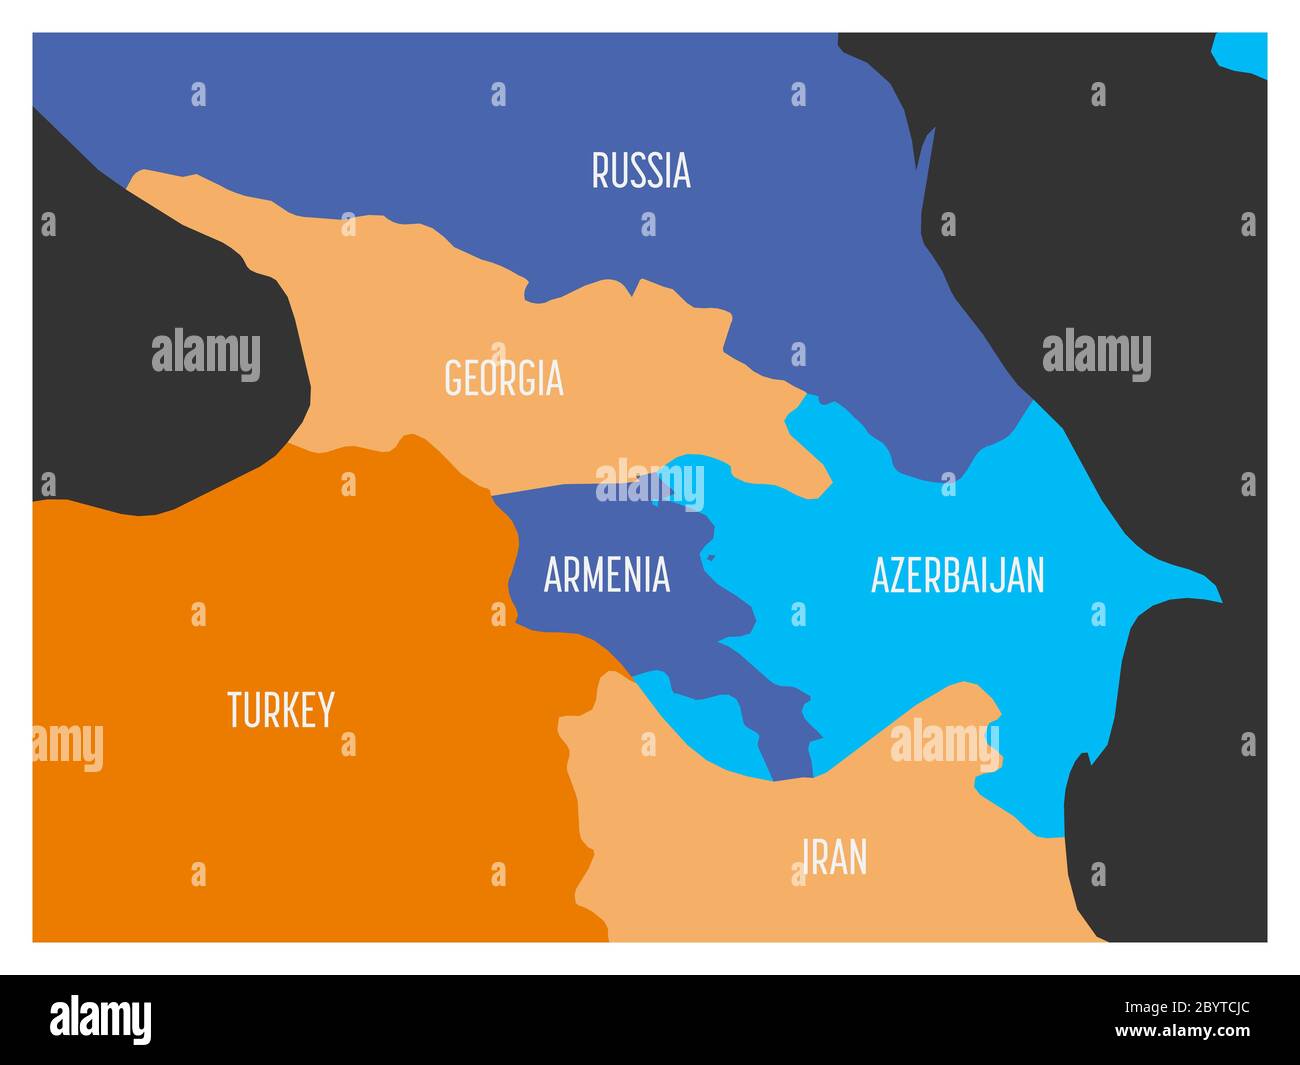 Mappa della regione caucasica con gli stati di Georgia, Armenia, Azerbaigian, Russia Turchia e Iran. Semplice mappa vettoriale piatta in quattro colori con bordi bianchi e etichette bianche. Illustrazione Vettoriale